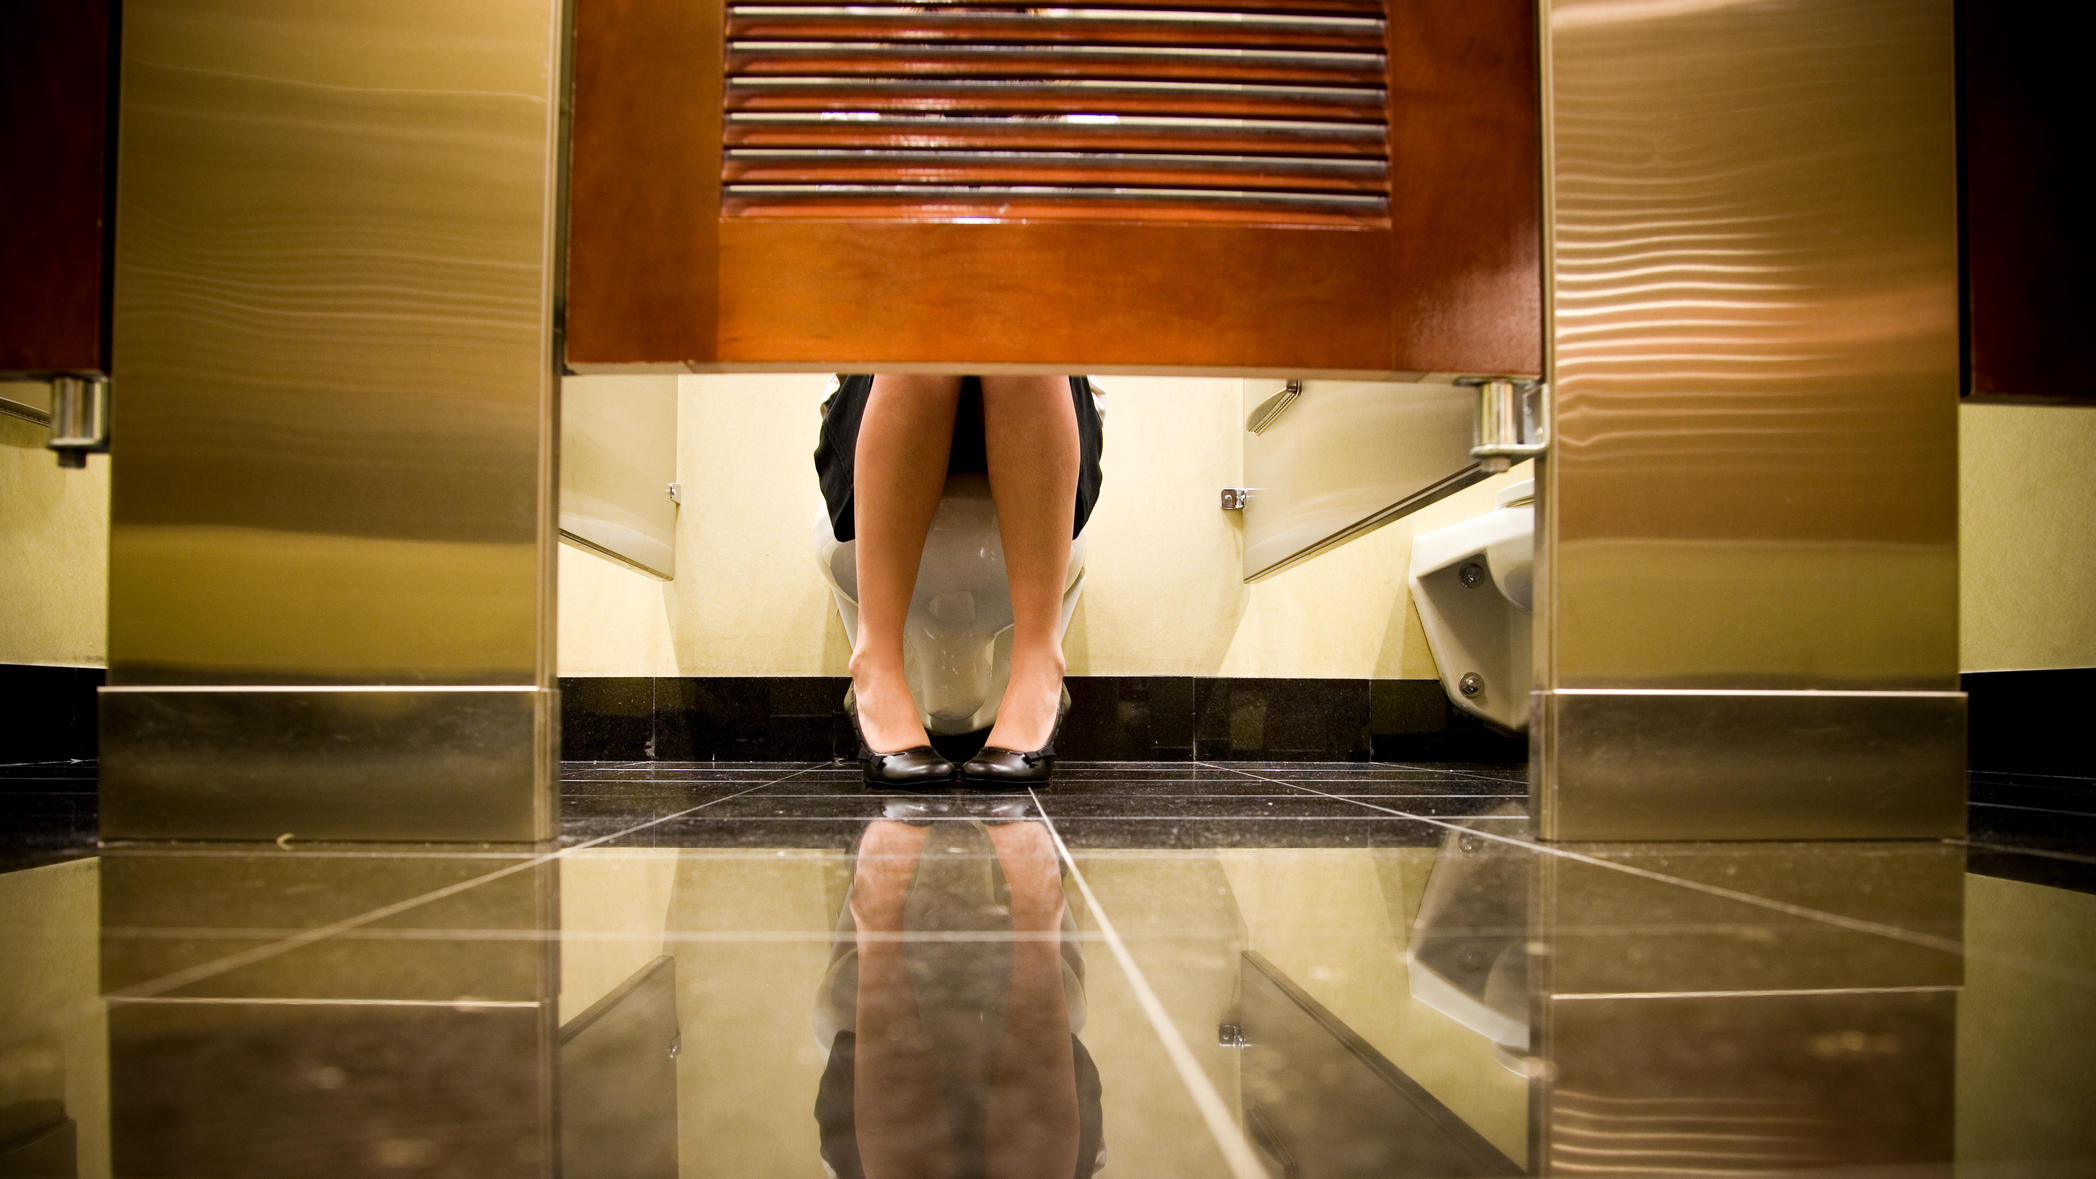 Toiletten mit Klopapier auszulegen, bringt nichts! Gesunde Haut ist nicht anfällig für Infektionen